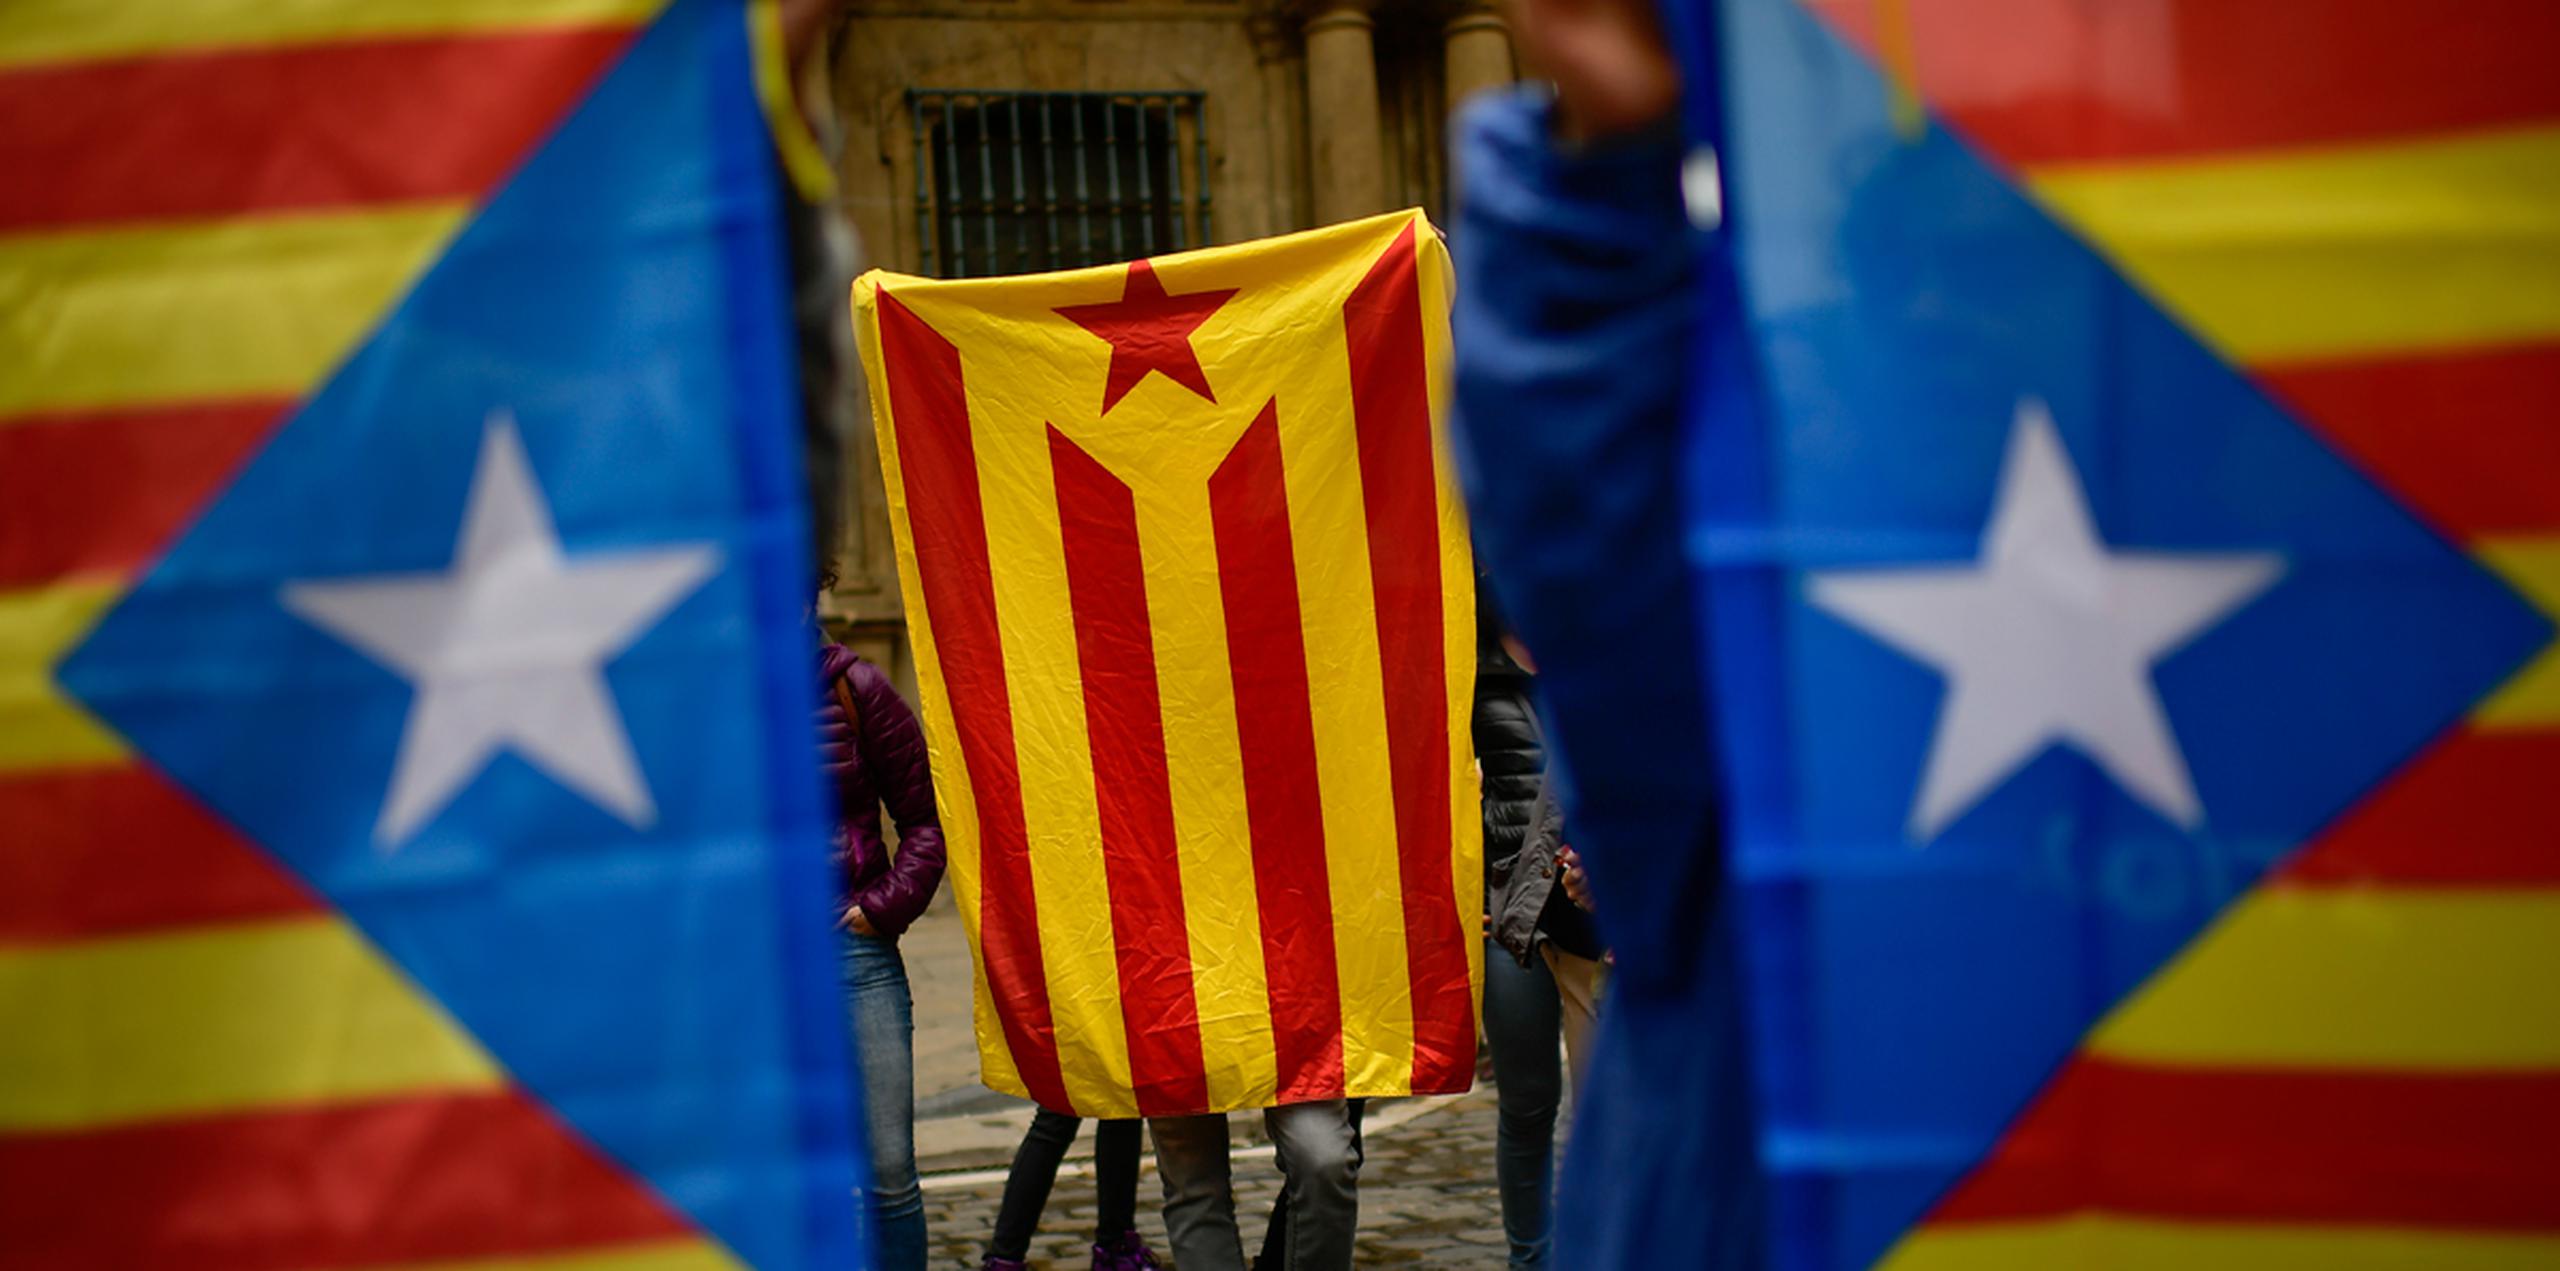 Partidarios de que Cataluña se independice de España sostienen banderas prosecesionistas catalanas, conocidas como ''esteleda'', en apoyo del referéndum de independencia. (AP)